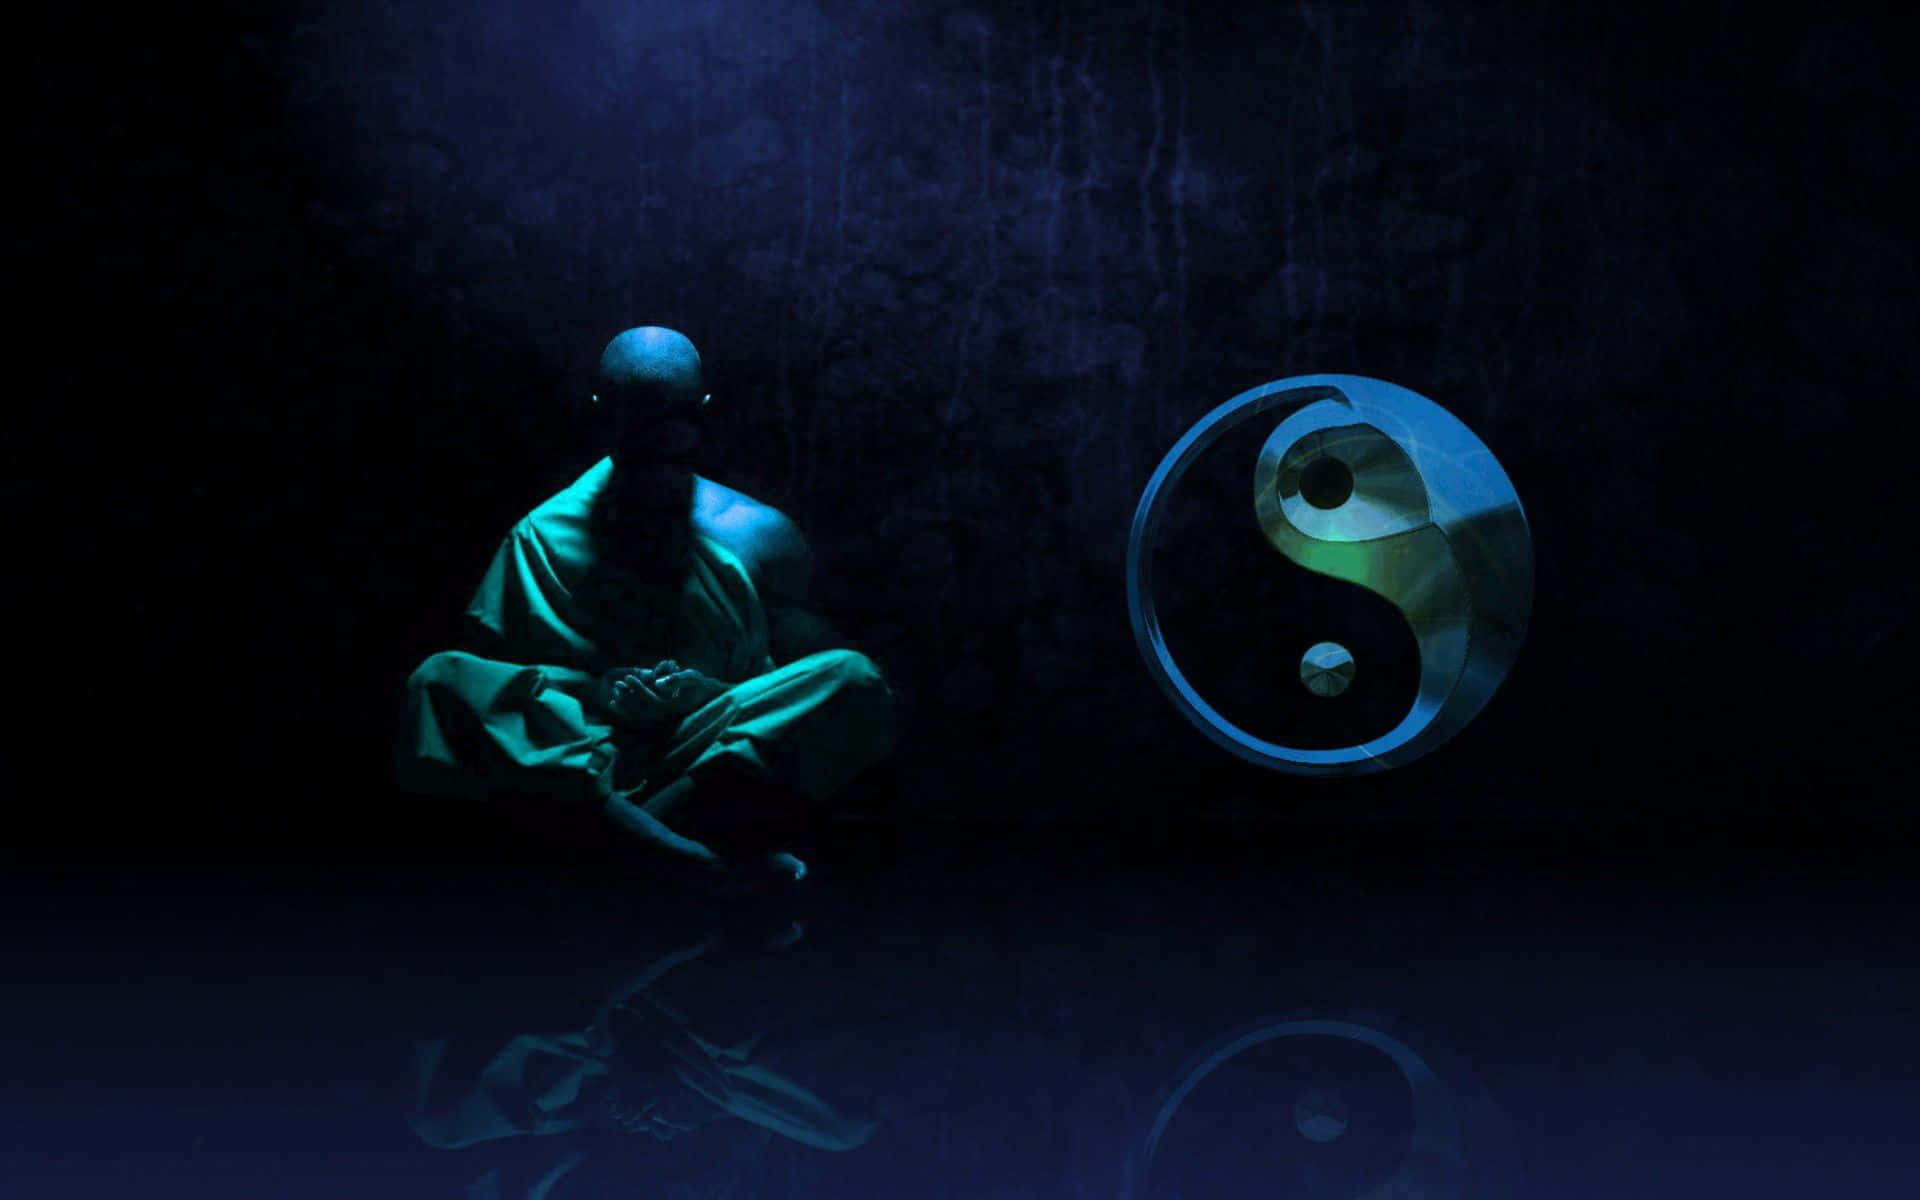 Imagende Un Monje Meditando Con Un Símbolo De Yin Yang Y Una Bola Brillante.